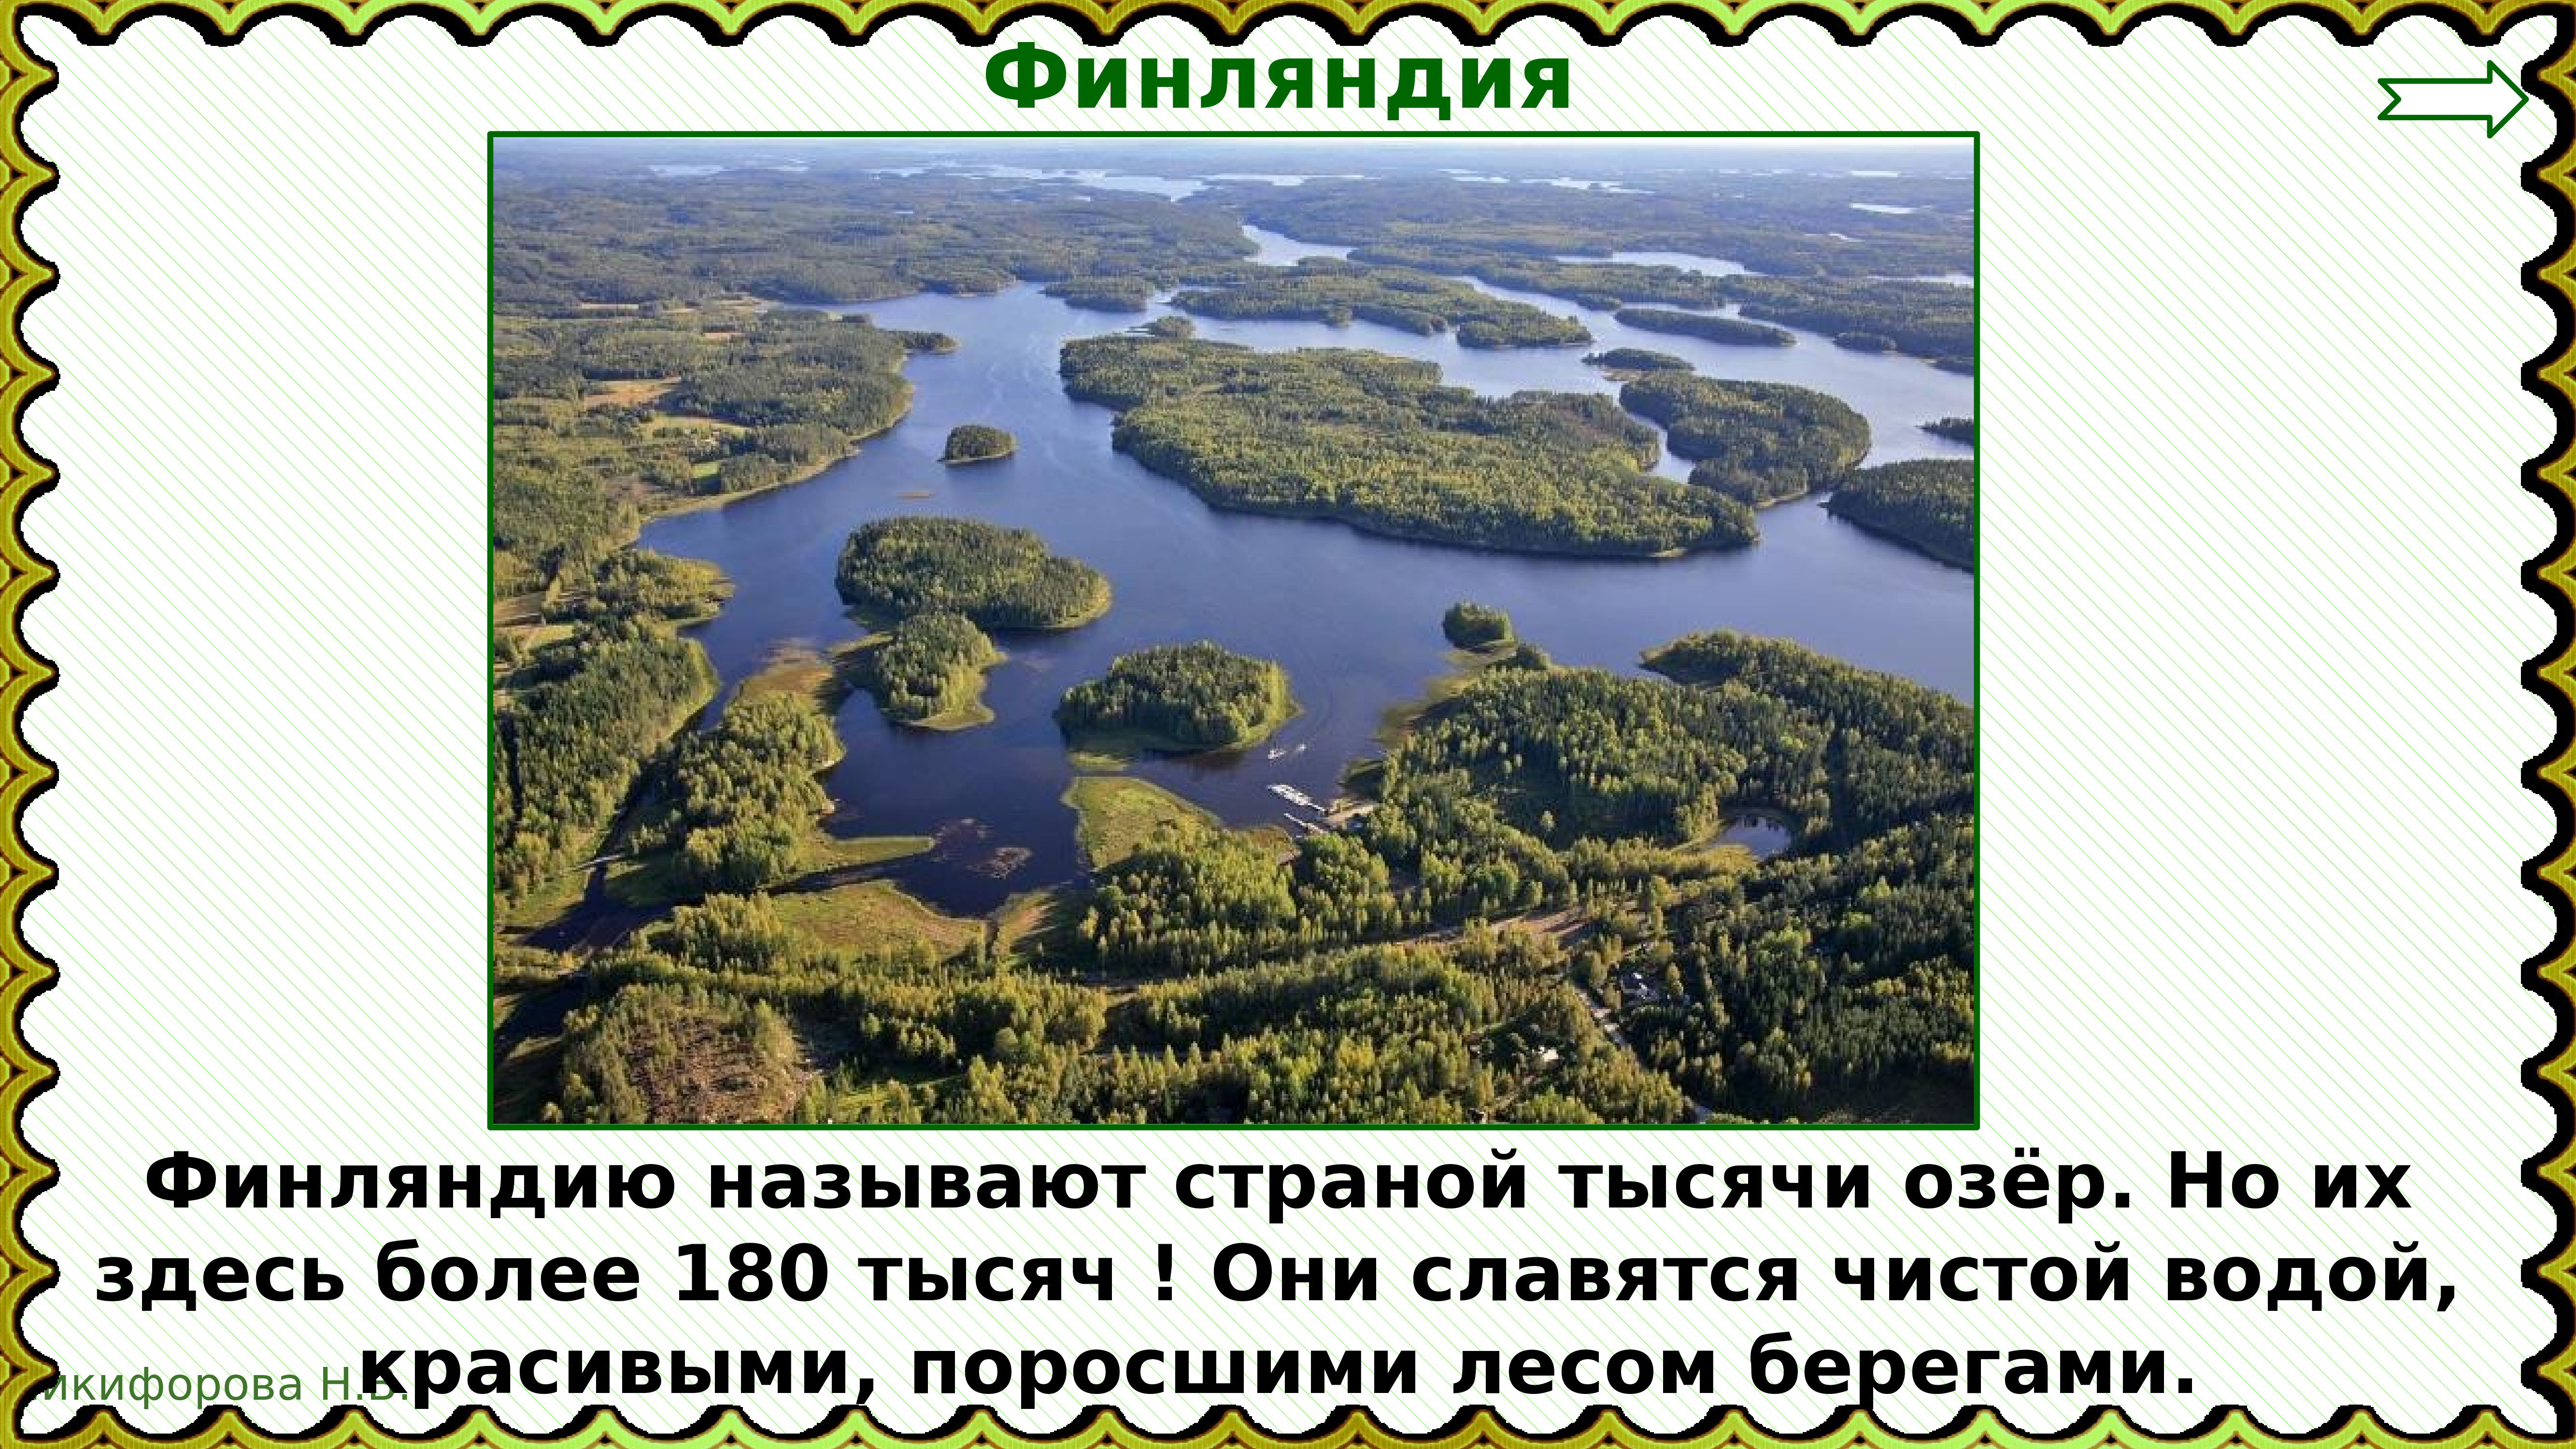 Какую страну называют страной 1000. Страной тысячи озер называют. Назовите страну тысячи озер.. Финляндия 1000 озер. Финляндию называют страной 1000 озер.